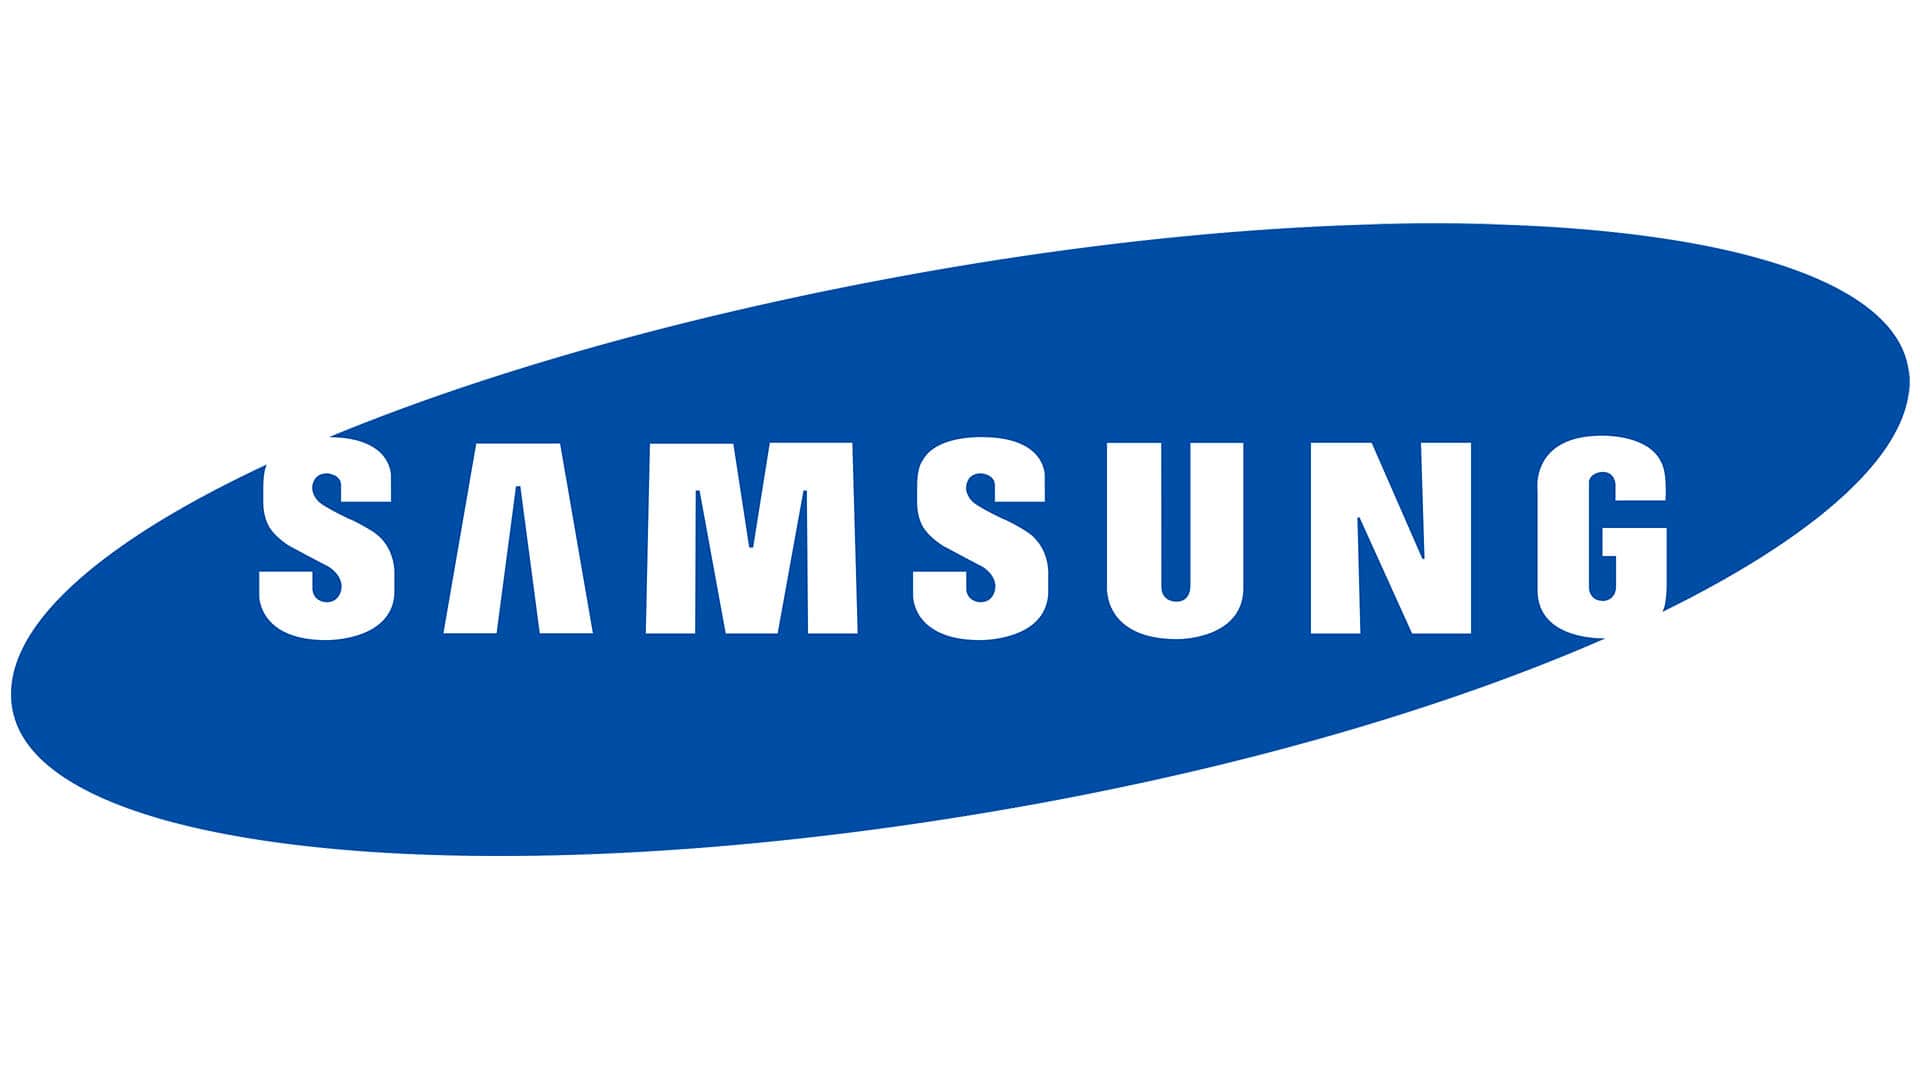 Servicio Técnico Samsung Santander